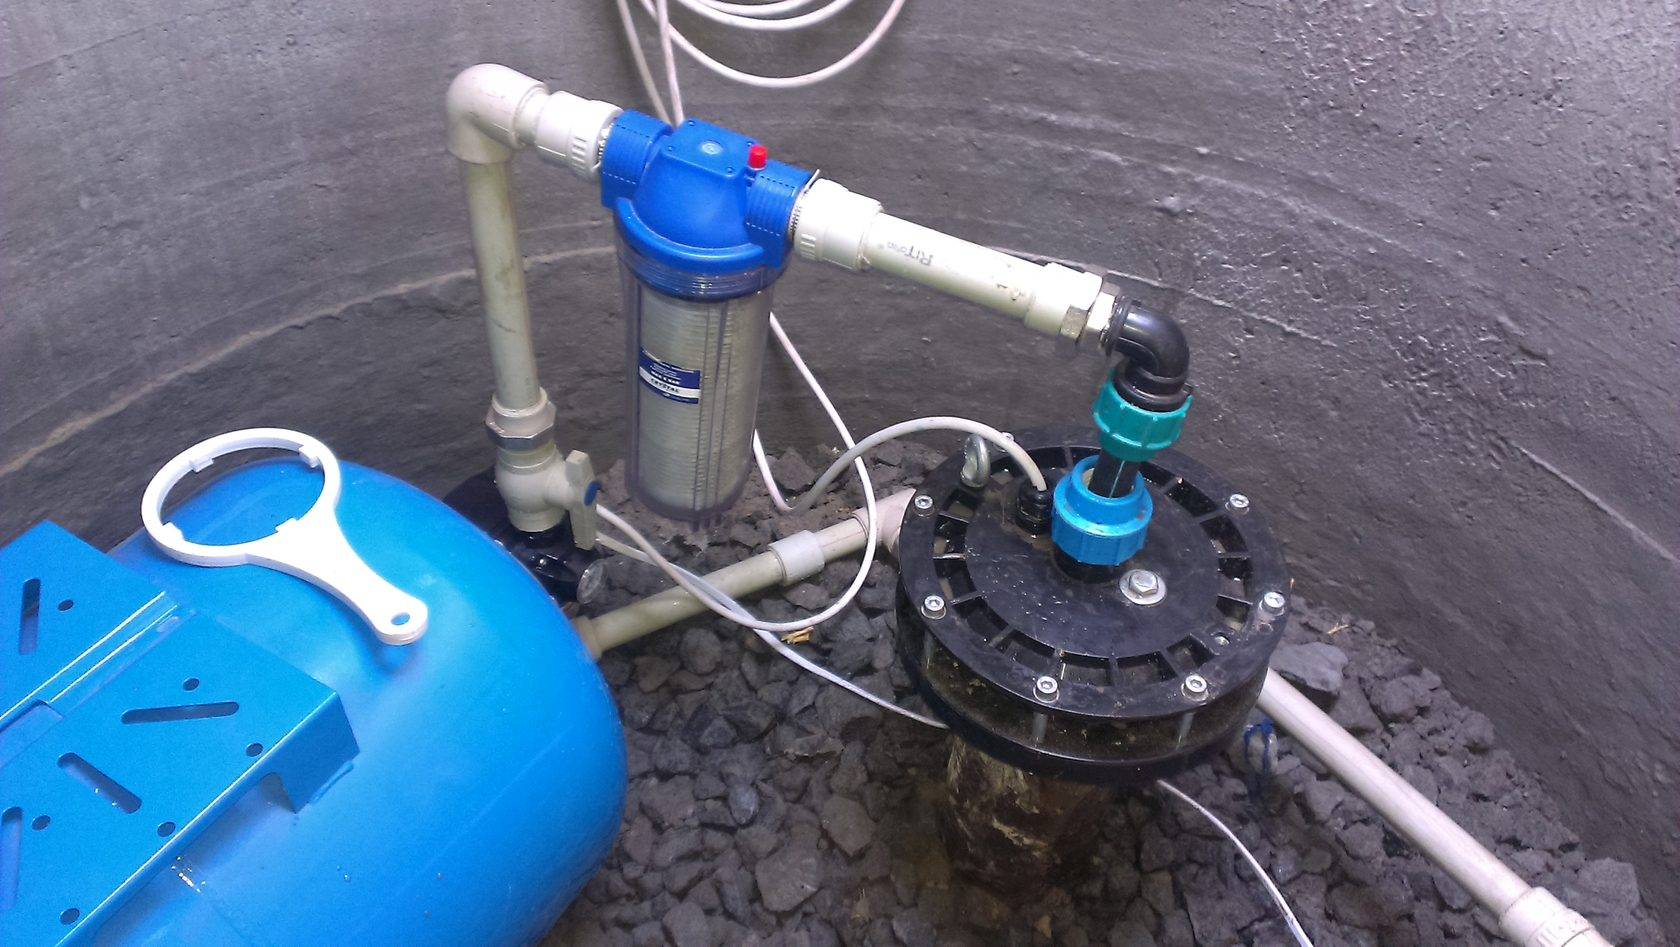 Подключение гидроаккумулятора в систему водоснабжения своими руками - точка j